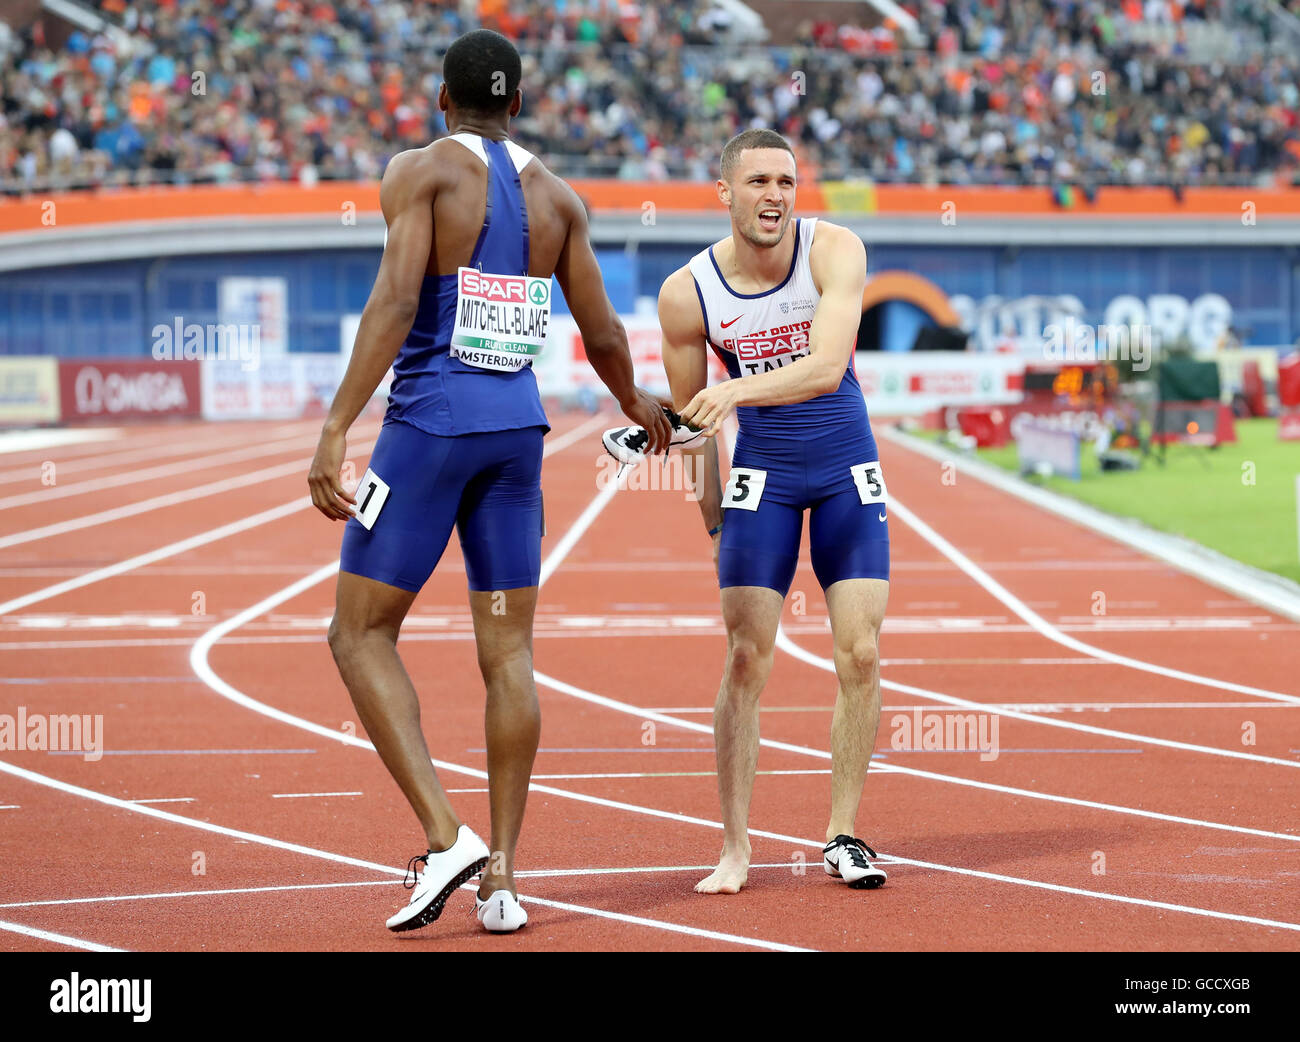 Great Britain's Danny Talbot (à droite) reçoit une crampe après avoir pris la quatrième place dans la finale du 200 mètres hommes au cours de la troisième journée du championnat d'athlétisme Européen 2016 au Stade Olympique d'Amsterdam. Banque D'Images